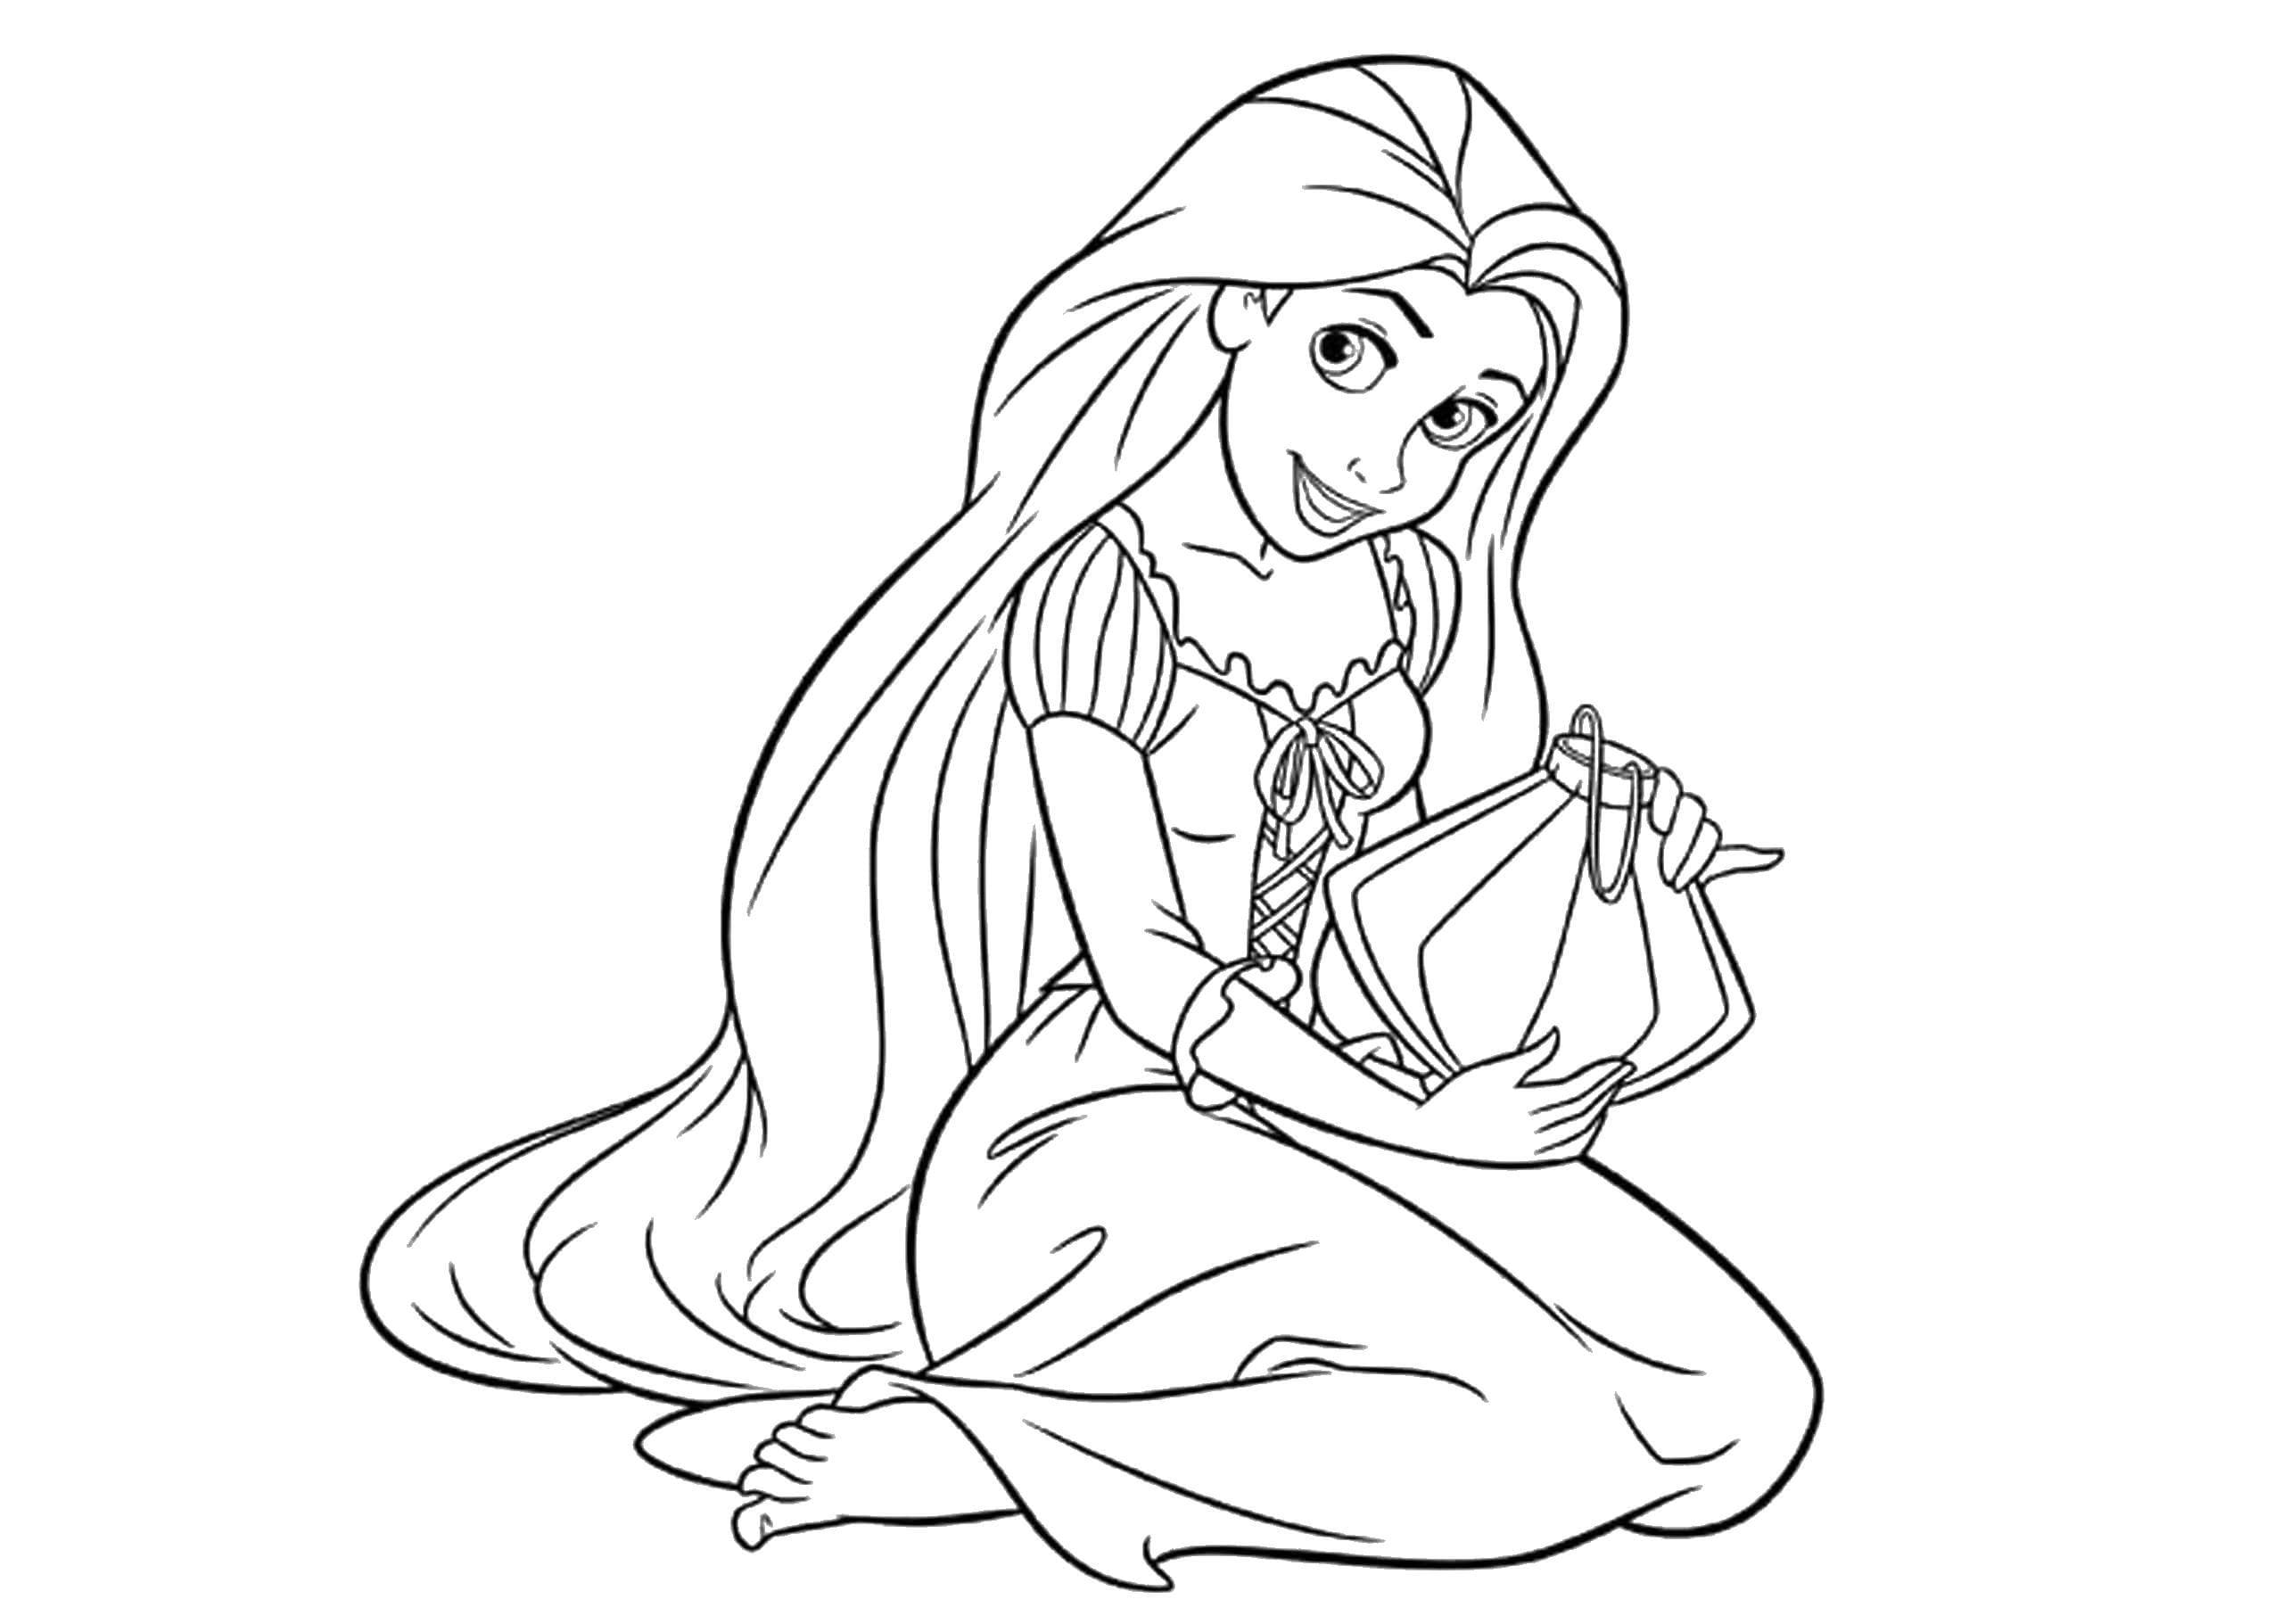 Dibujos de Rapunzel para colorear - 100 imágenes para imprimir gratis